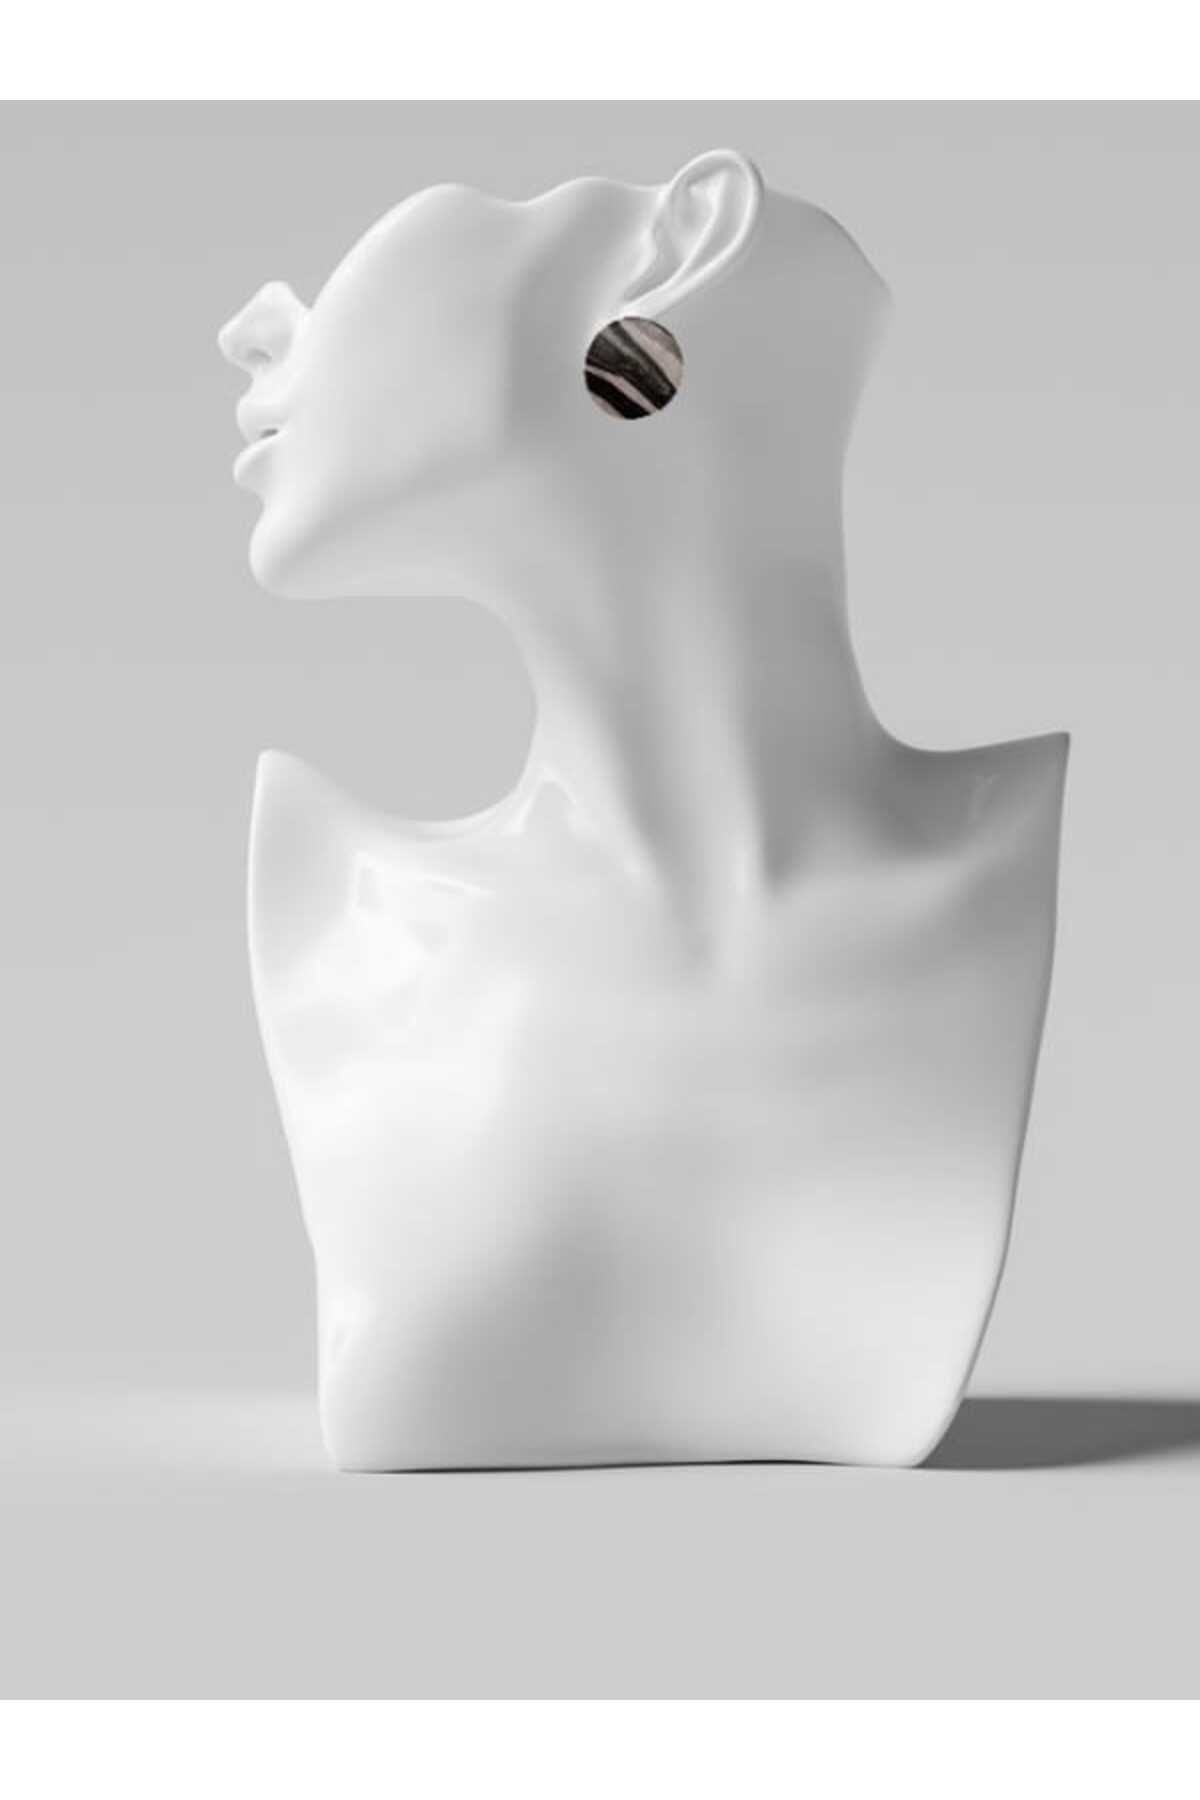 Karşı Köyden Özel Tasarım, El Yapımı Polimer Kil Üzeri Mermer Desenli Detay Küpe, Handmade Polymer Clay Earrings